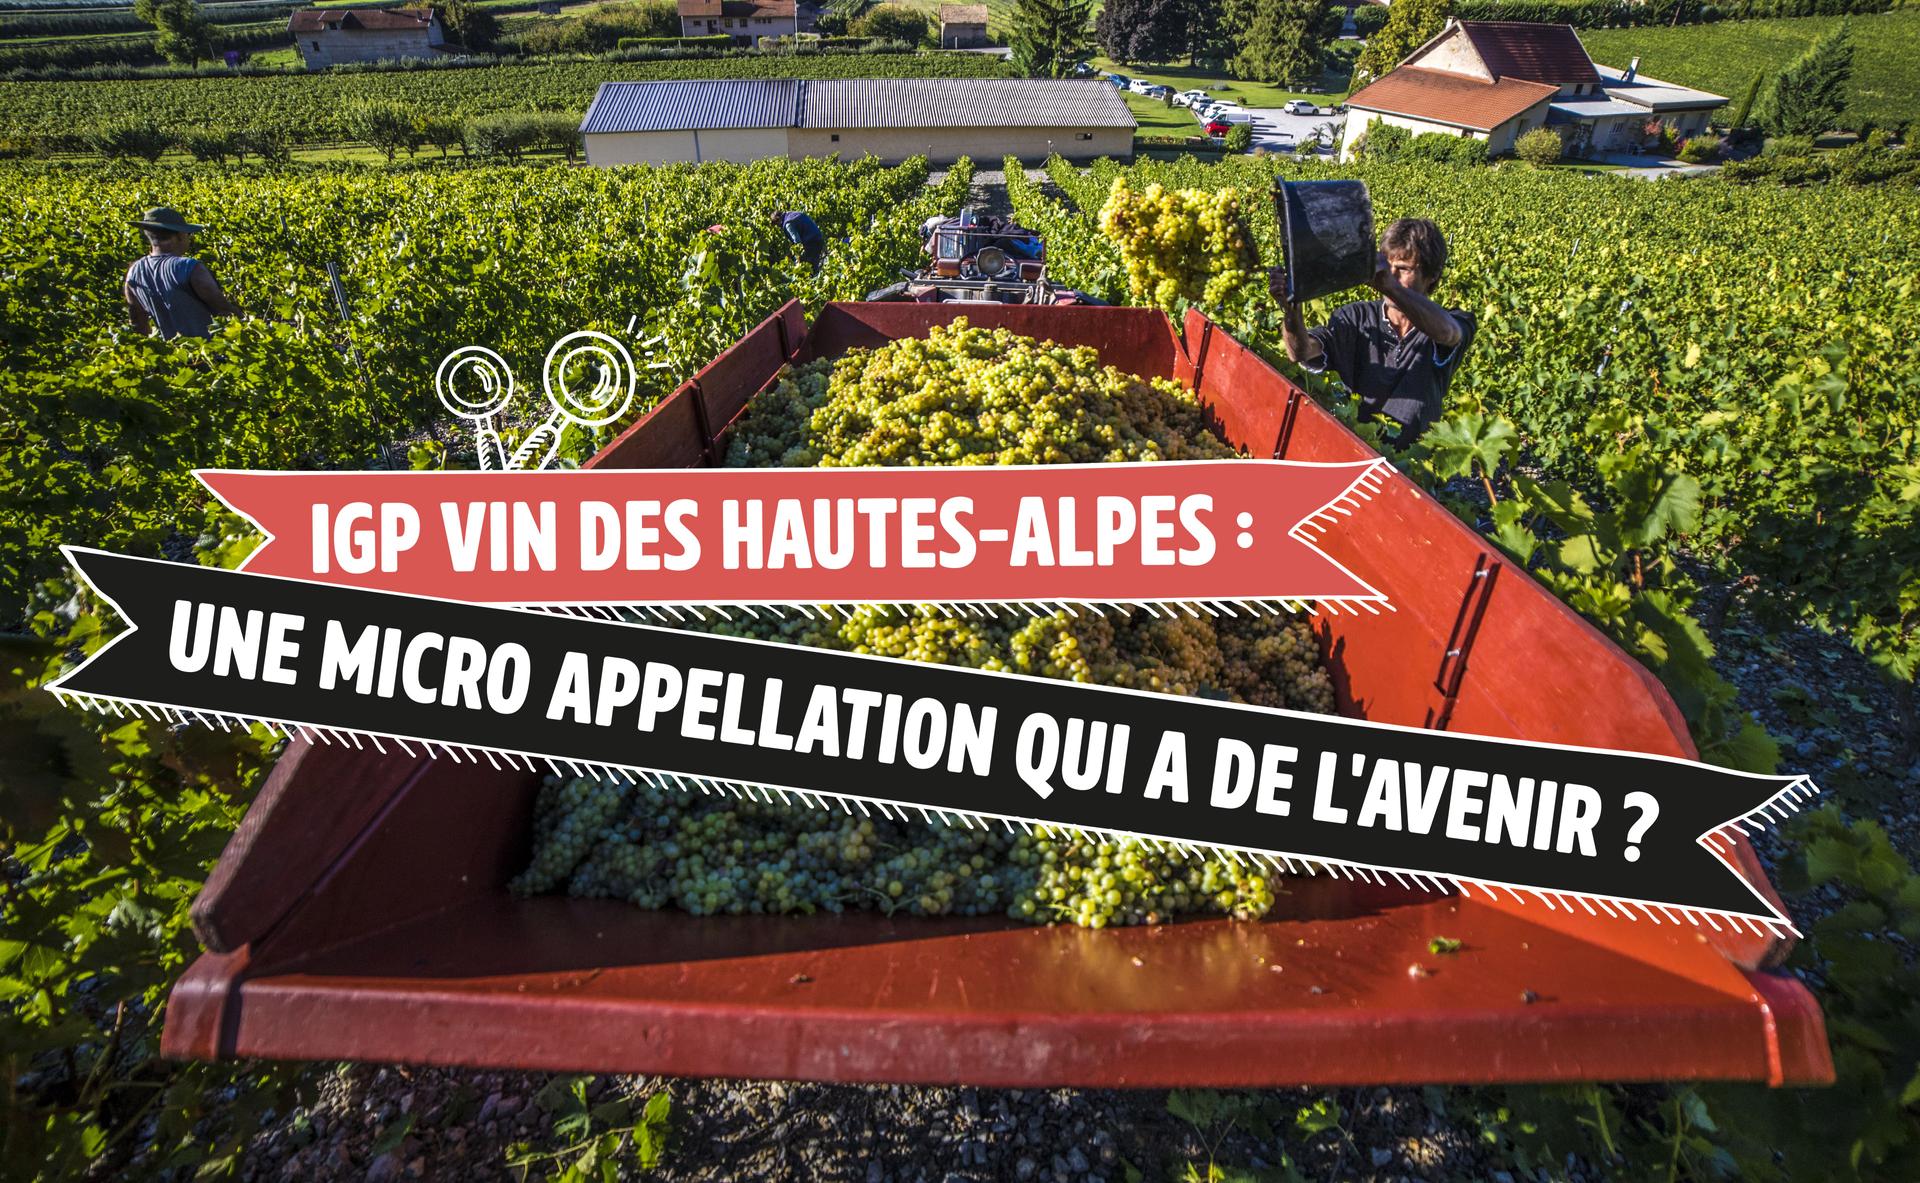 IGP vin des Hautes-Alpes : une micro appellation qui a de l’avenir ?